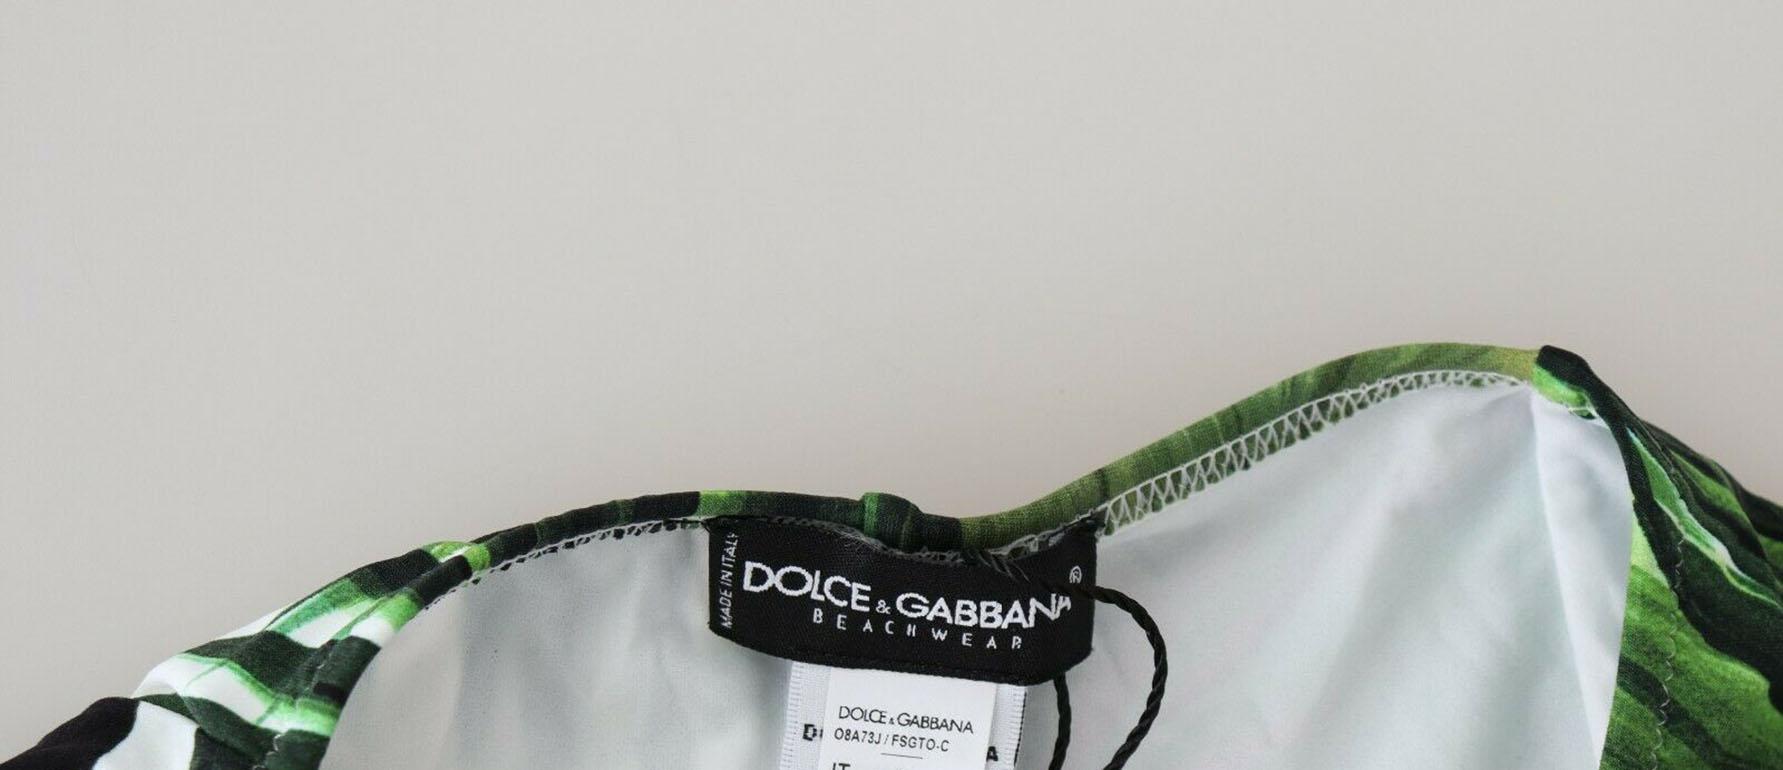 Dolce & Gabbana Green Tropical Jungle Bamboo Swimsuit Swimwear Bikini Beachwear For Sale 5